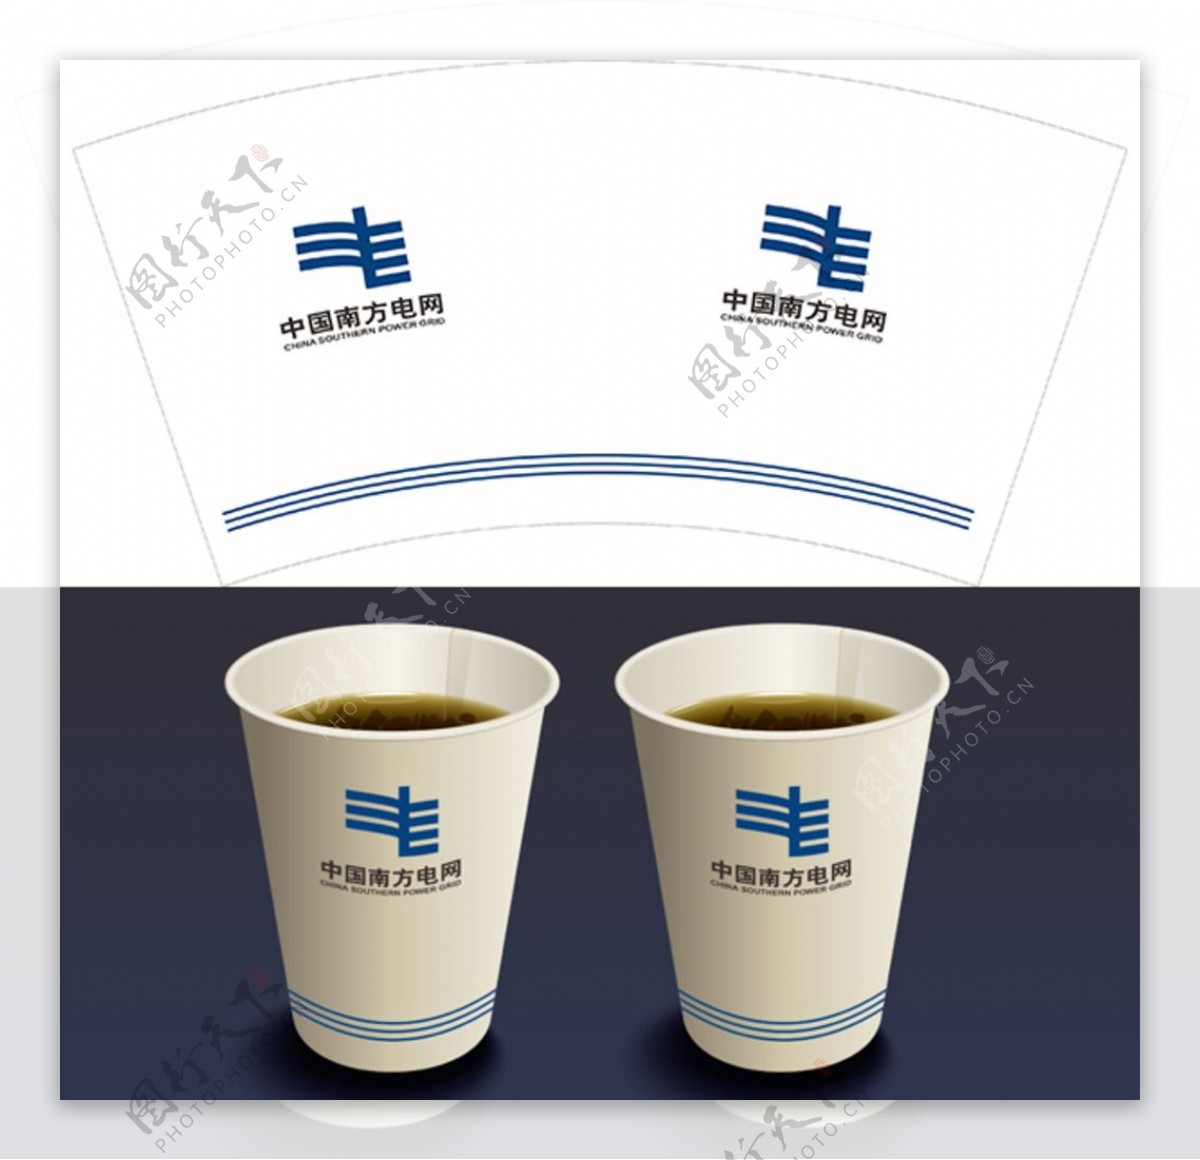 中国南方电网纸杯设计图片